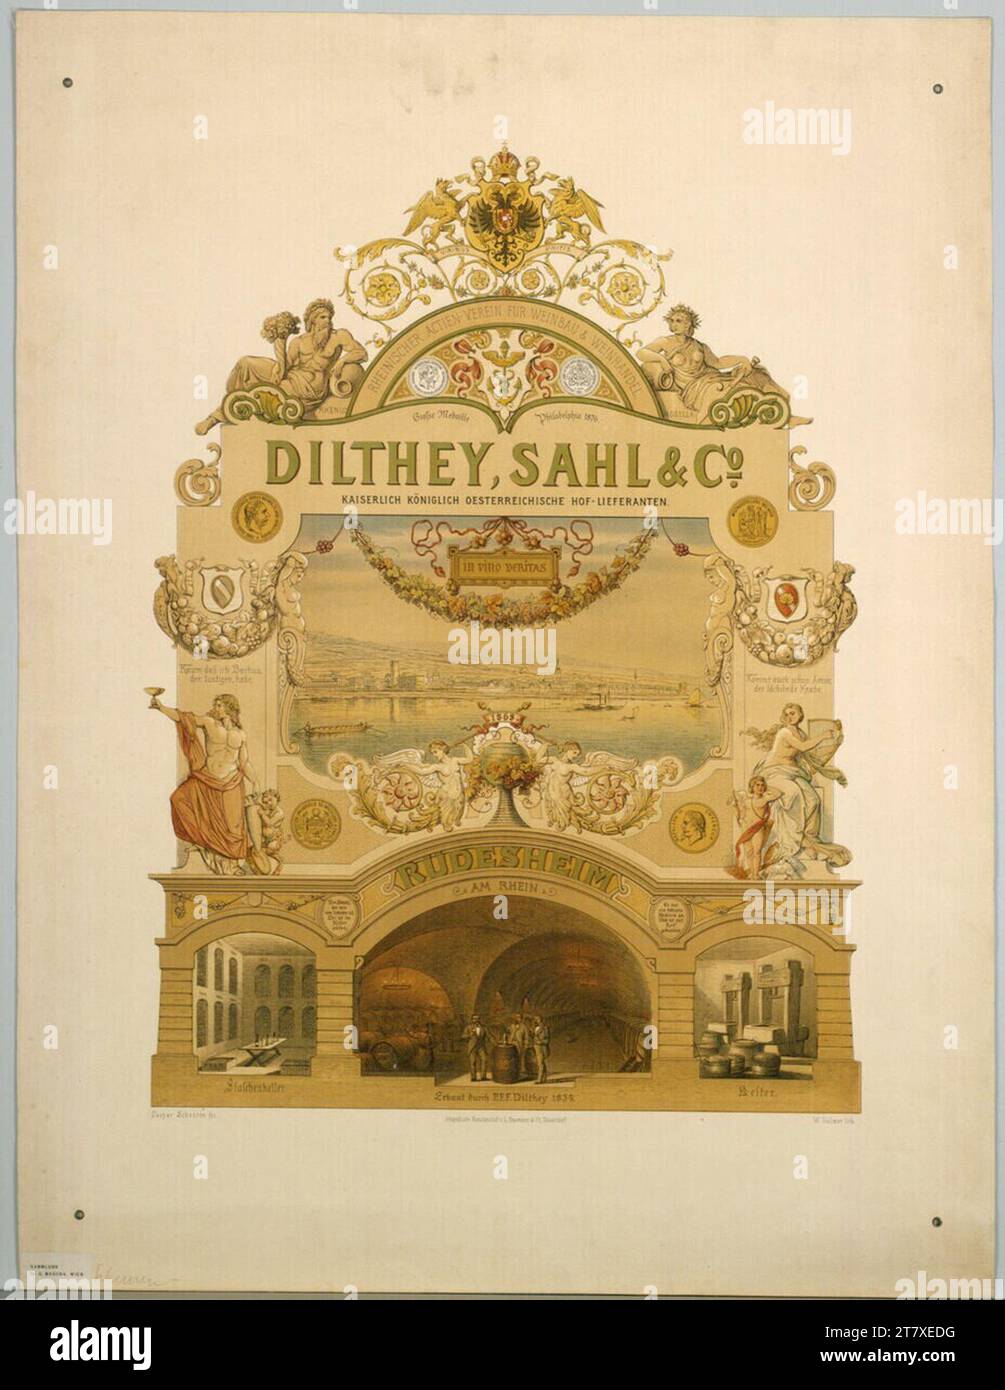 Caspar Johann Nepomuk Scheuren Dilthey; Sahl & Co; RUDESHEIM AM RHEIN; Rheinischer Actien Association for Viticulture & Wine Trade. Color after 1876 Stock Photo